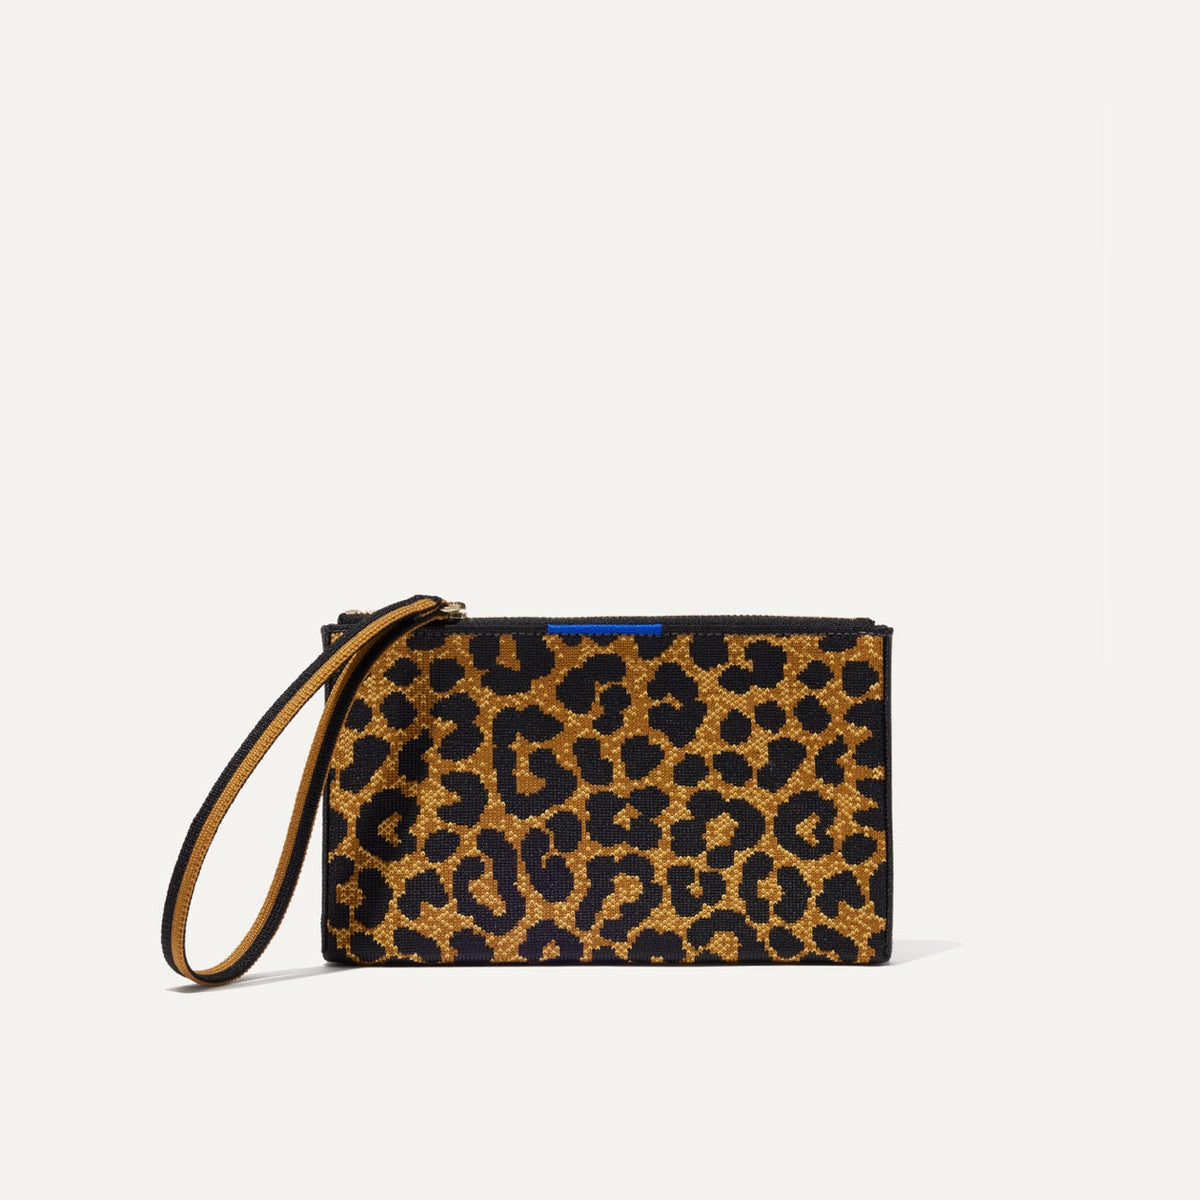 Petite Market Bag in Cheetah Print